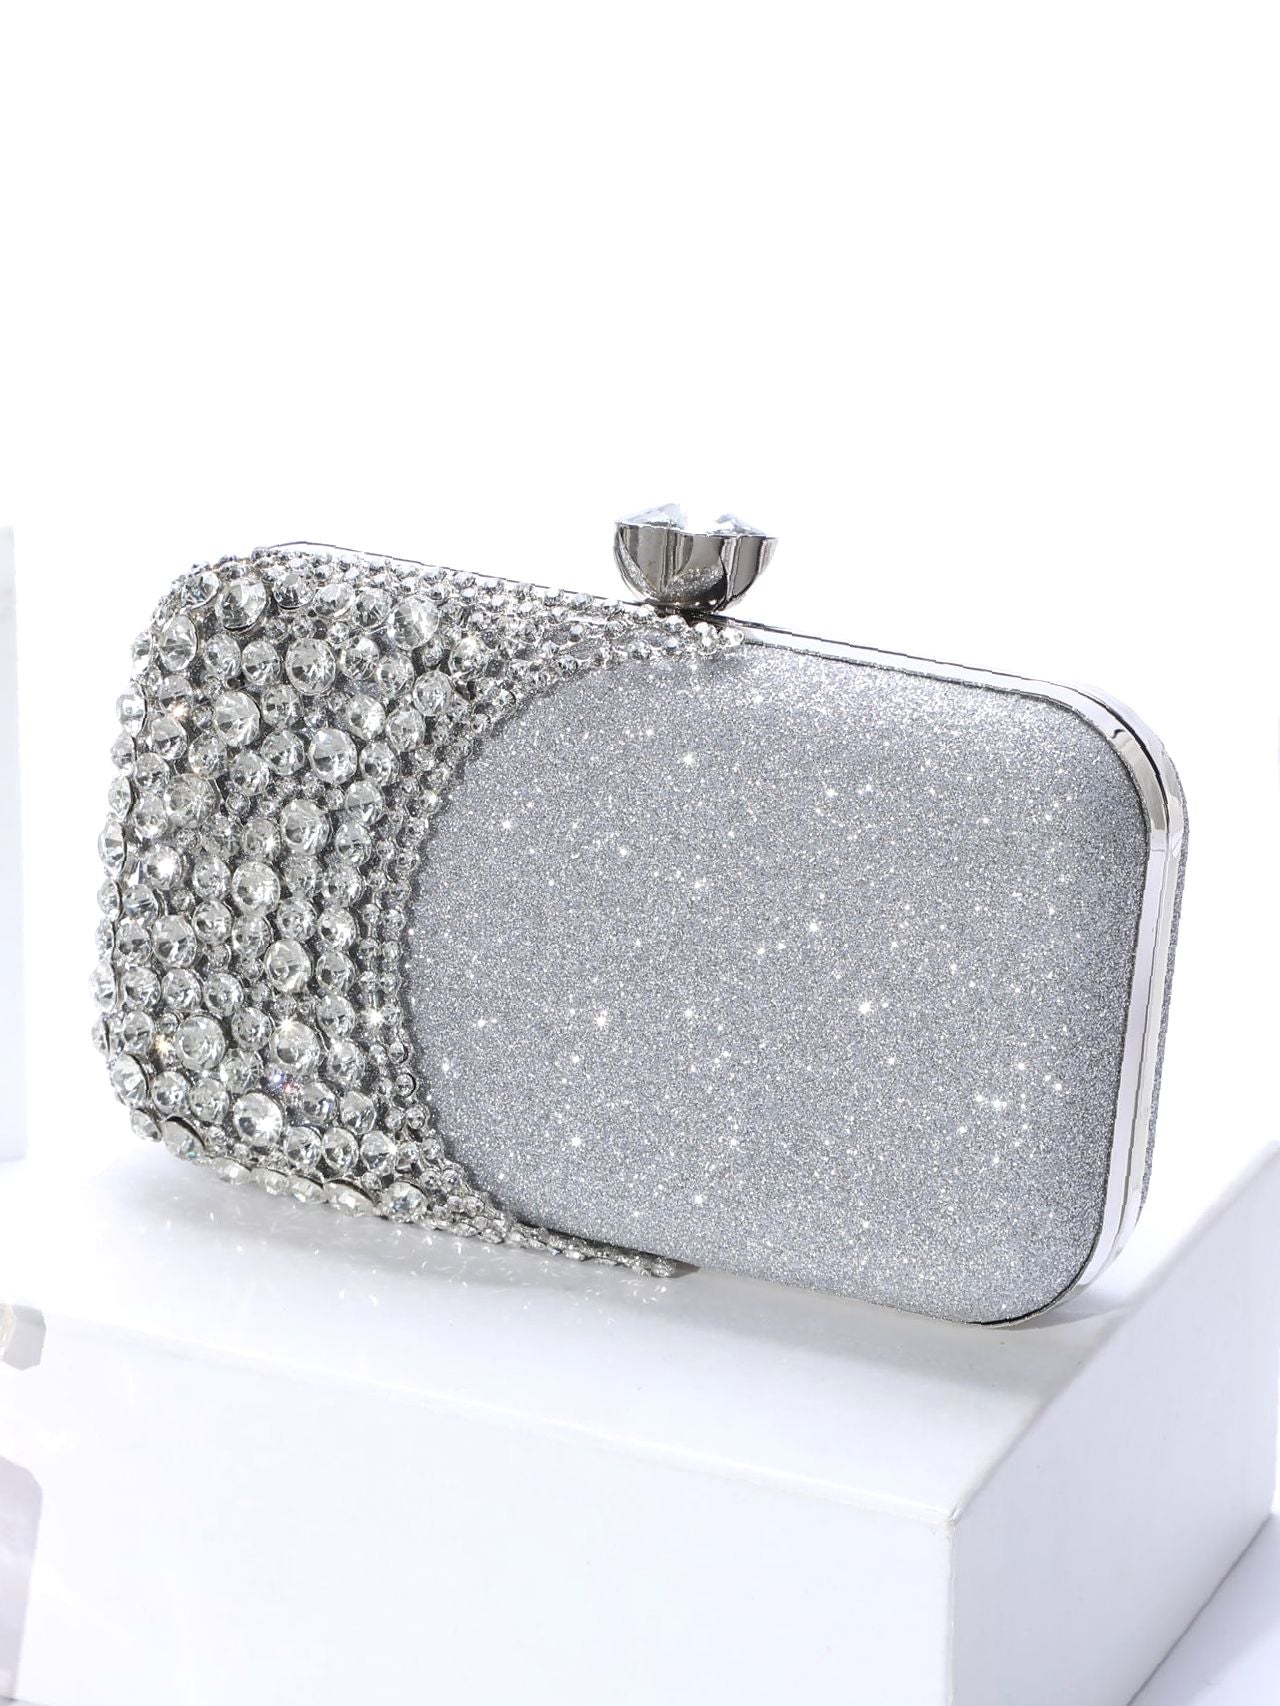 BirdInBag-Glitter Diamond Decor Clutch Bag - Women Evening & Clutch